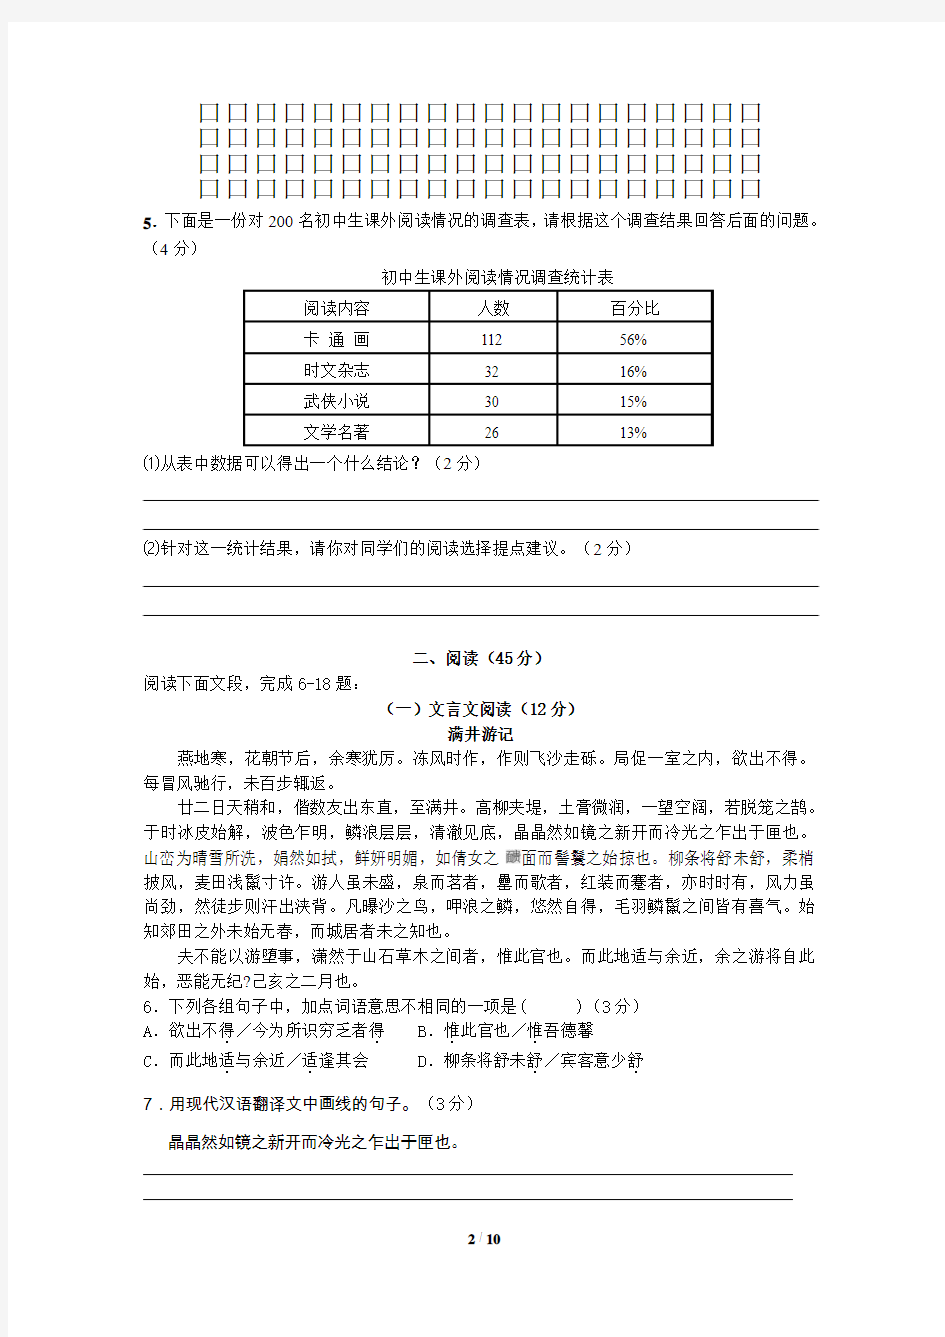 广东省2013年中考模拟语文试卷